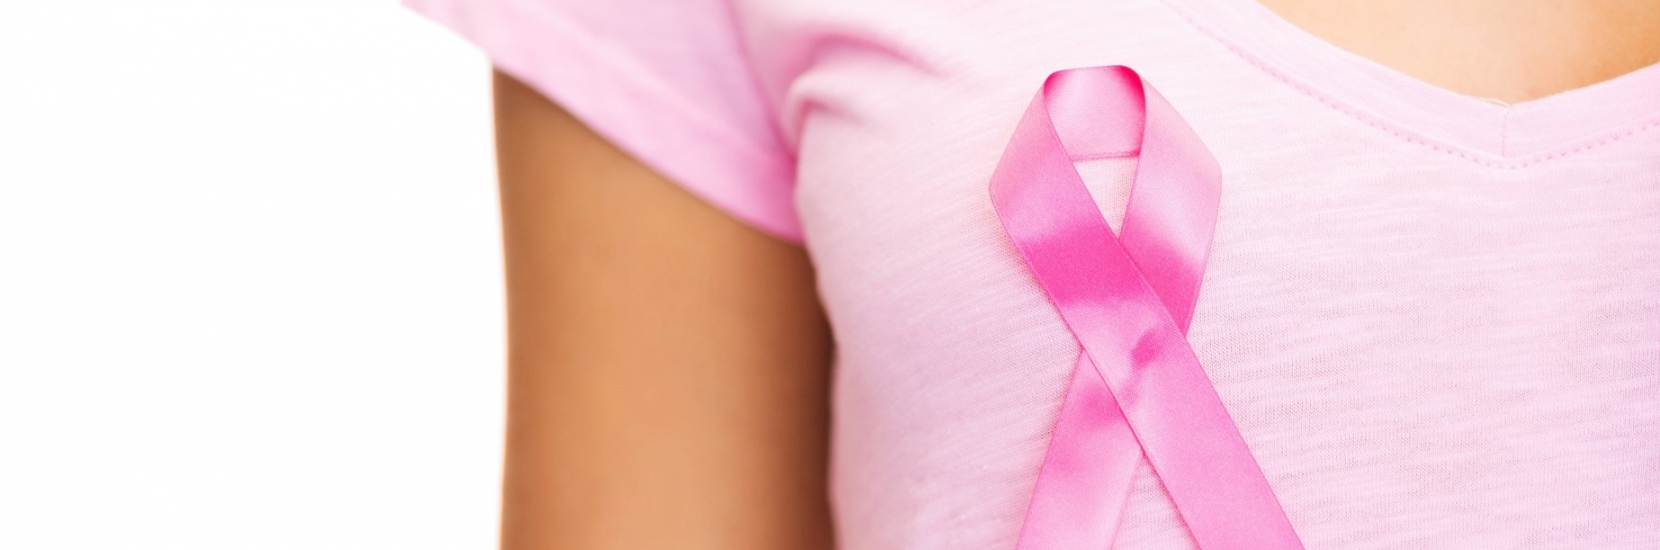 Après le cancer du sein: la reconstruction de soi. Le point de vue du chirurgien et du psychologue